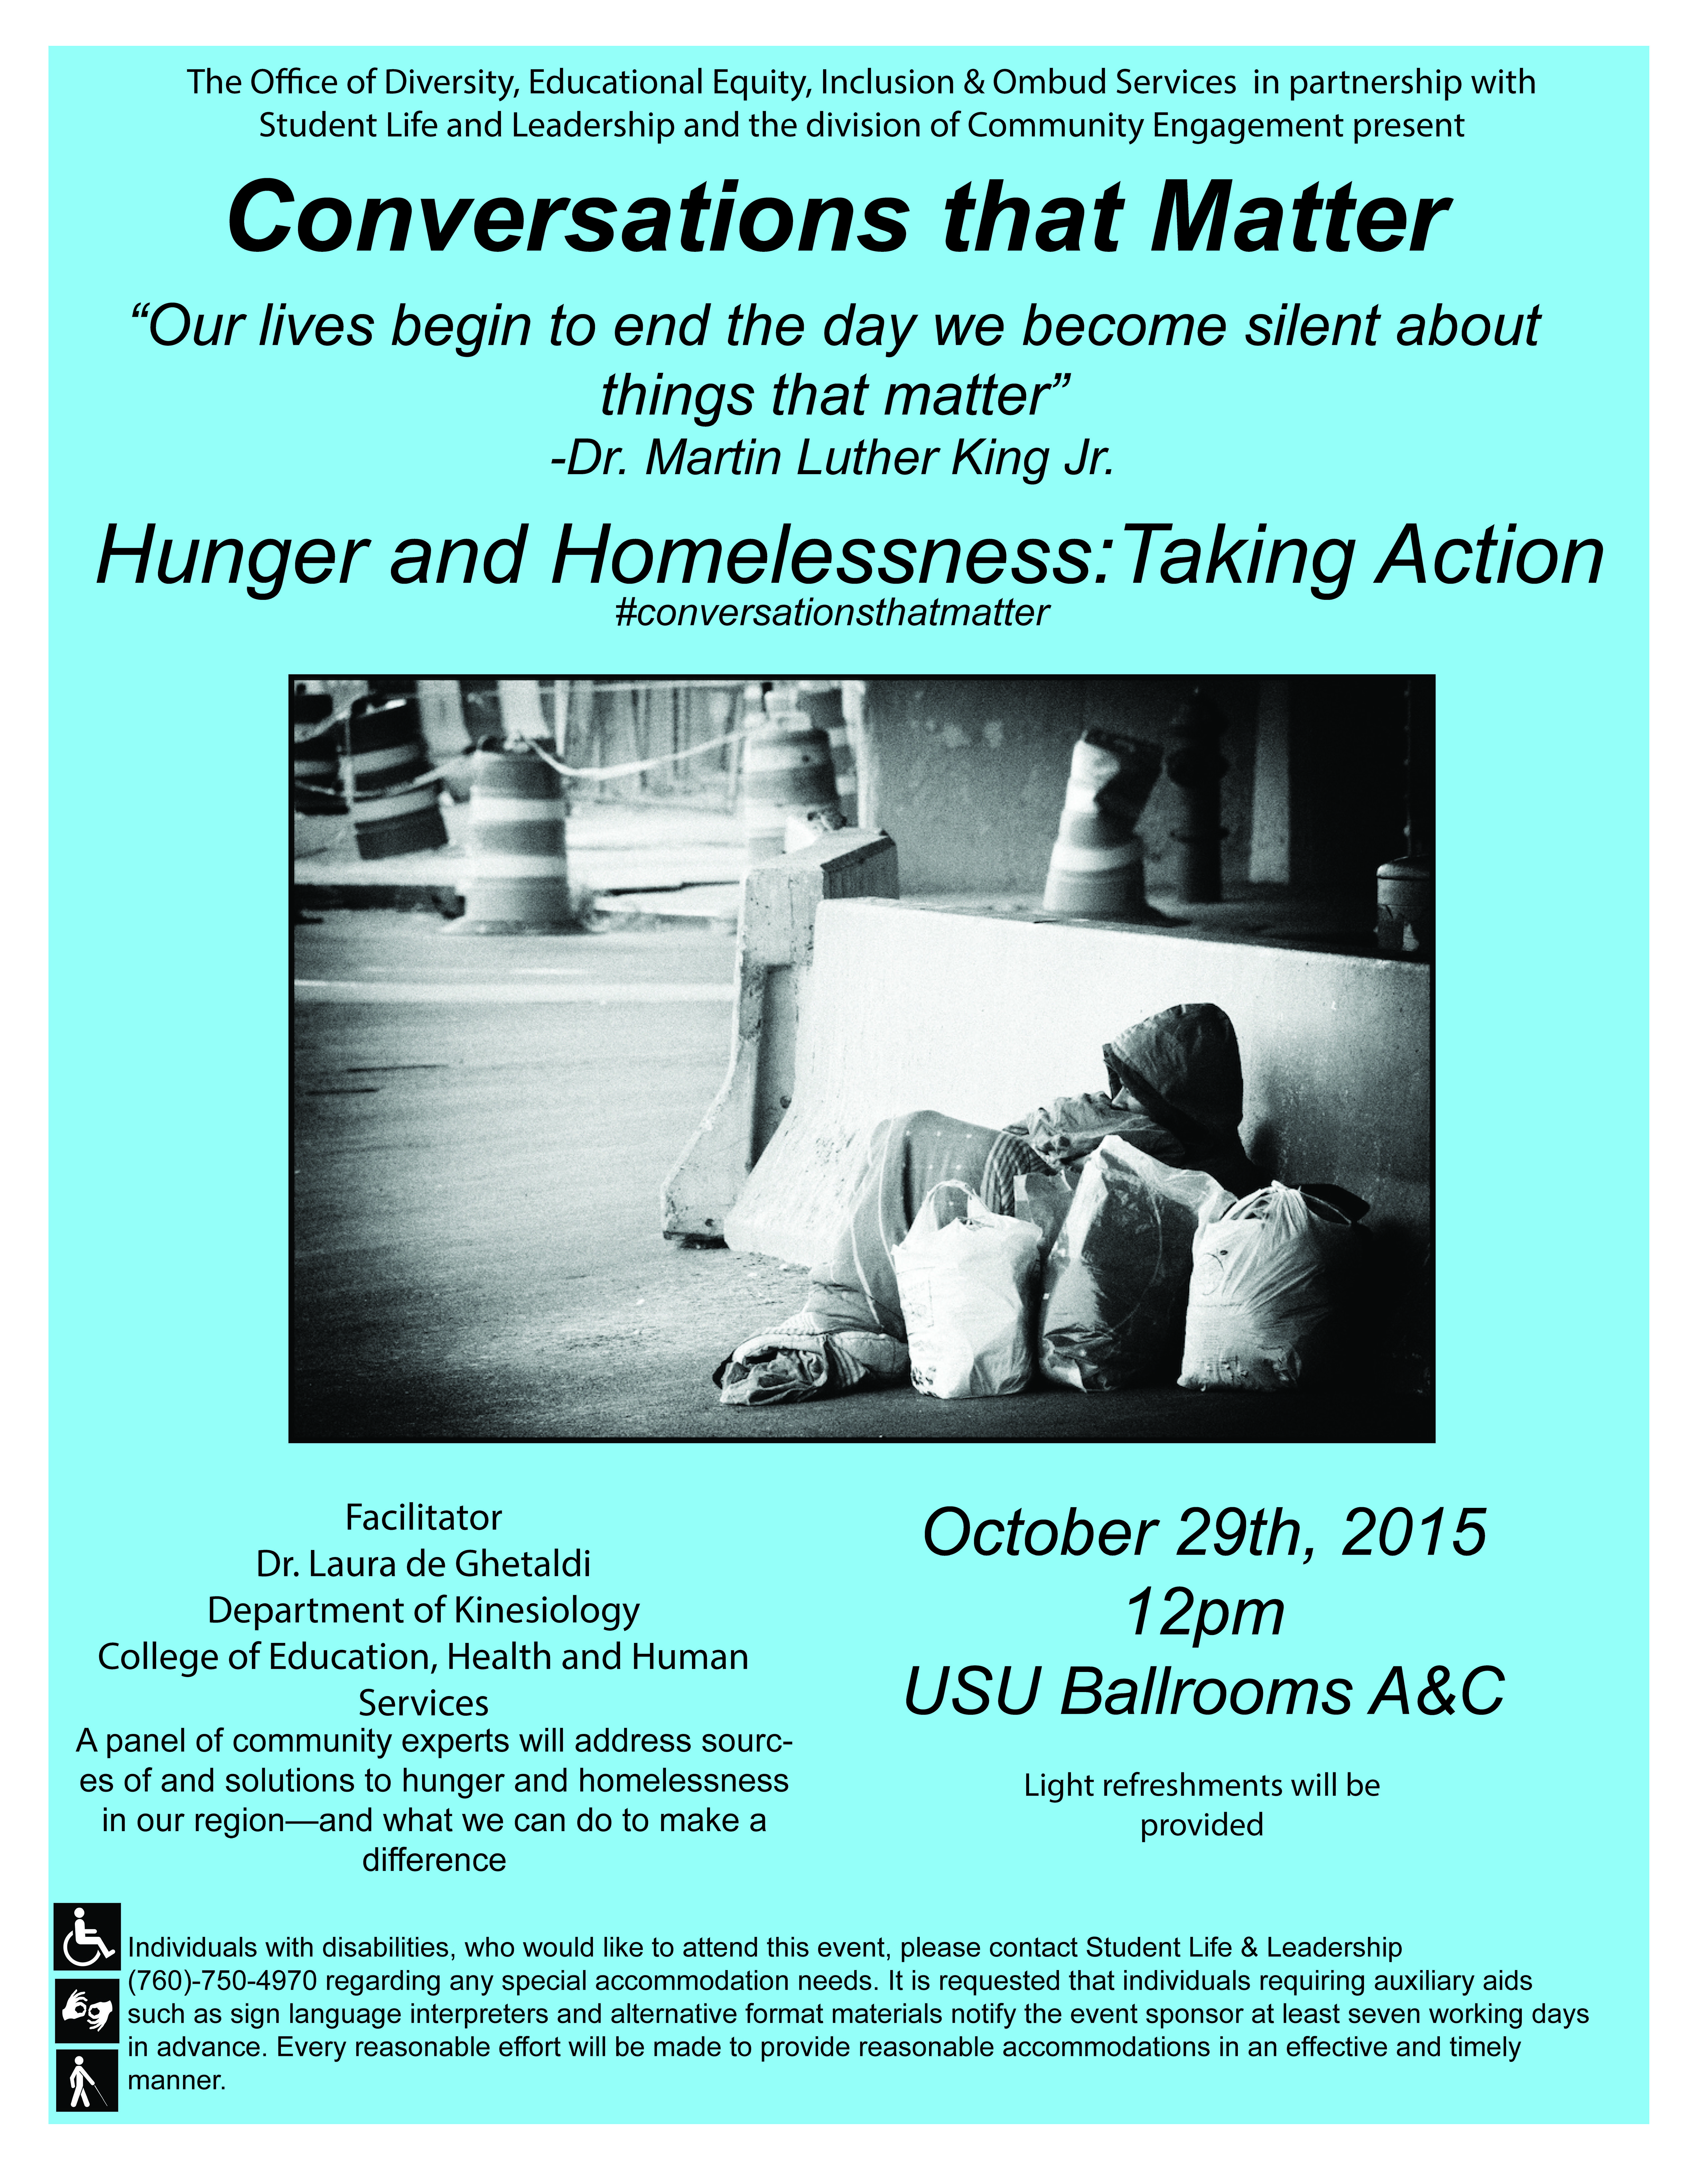 Hunger & Homelessness flyer